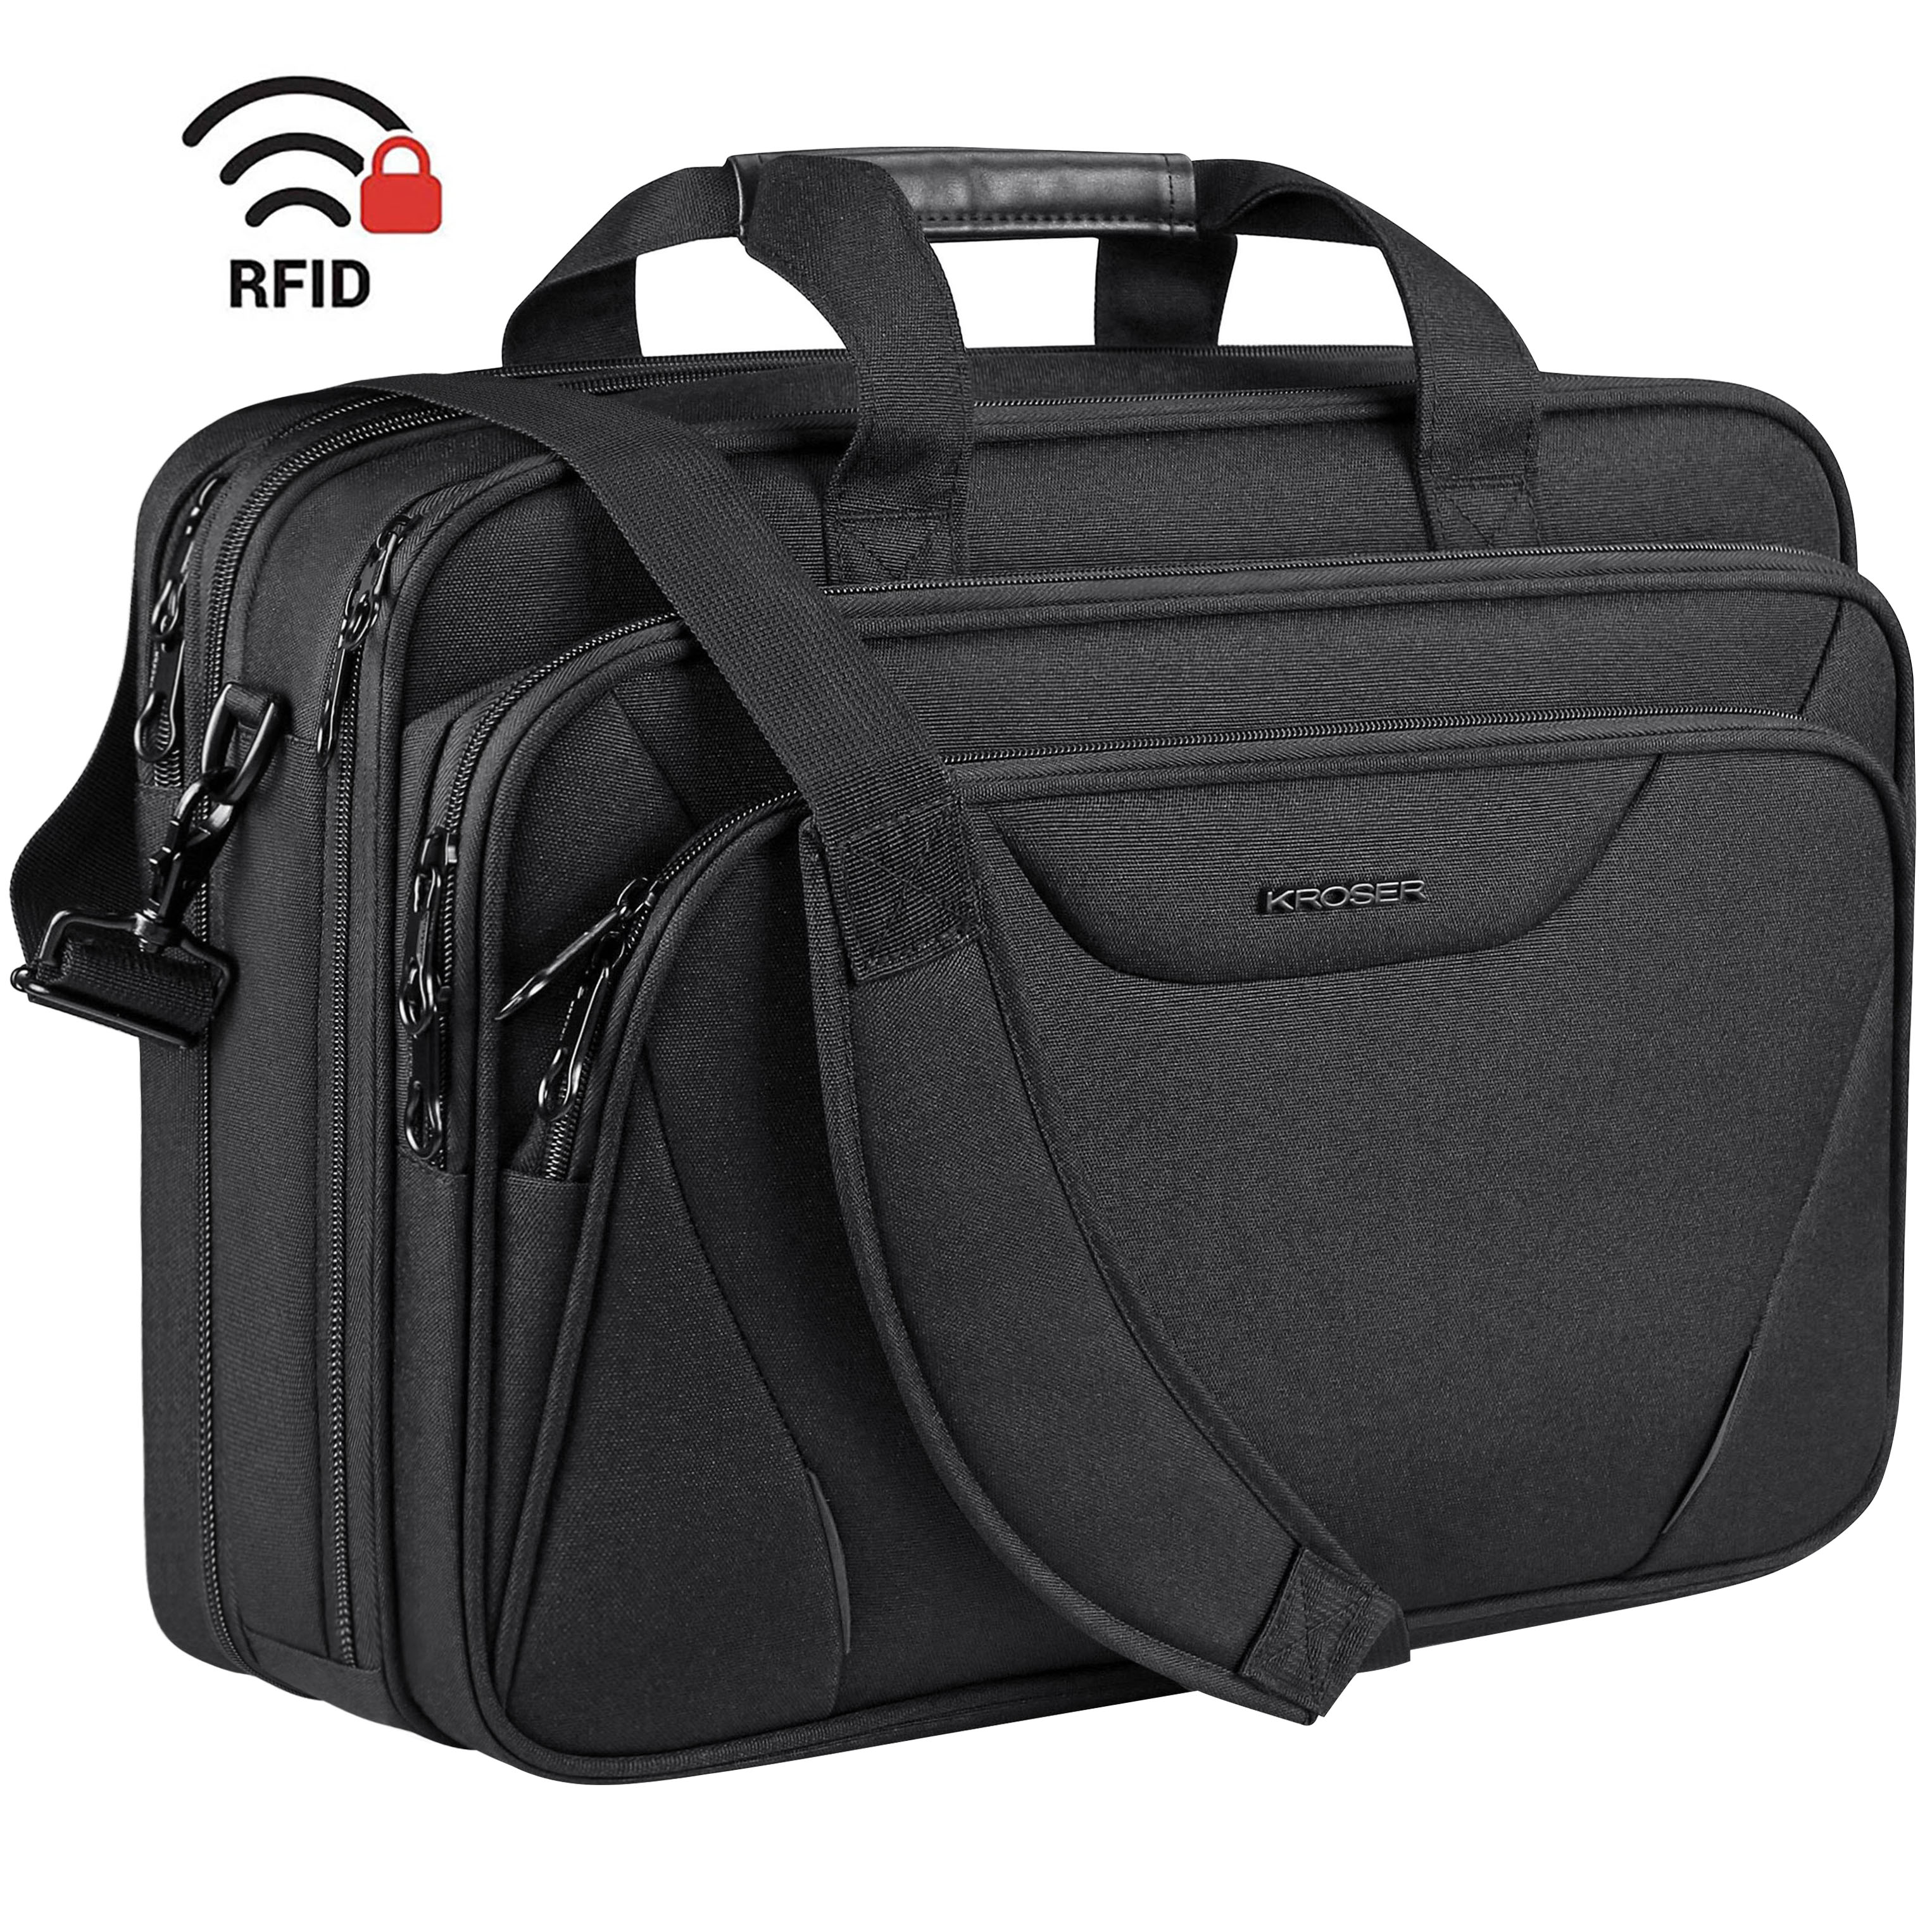 KROSER 18"Laptop Bag Laptop Briefcase Fits Up to 17.3" Laptop Expandable Shoulder Bag Computer Bag, Black - image 1 of 7